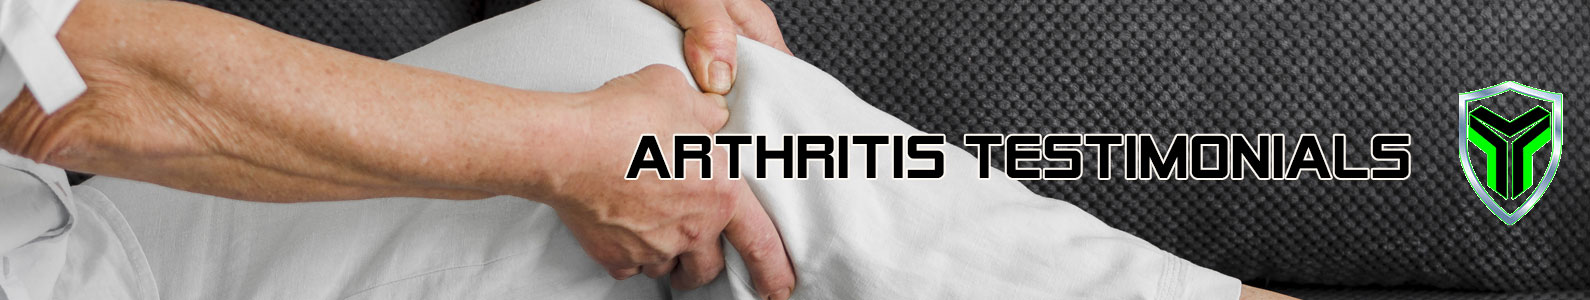 Arthritis testimonials